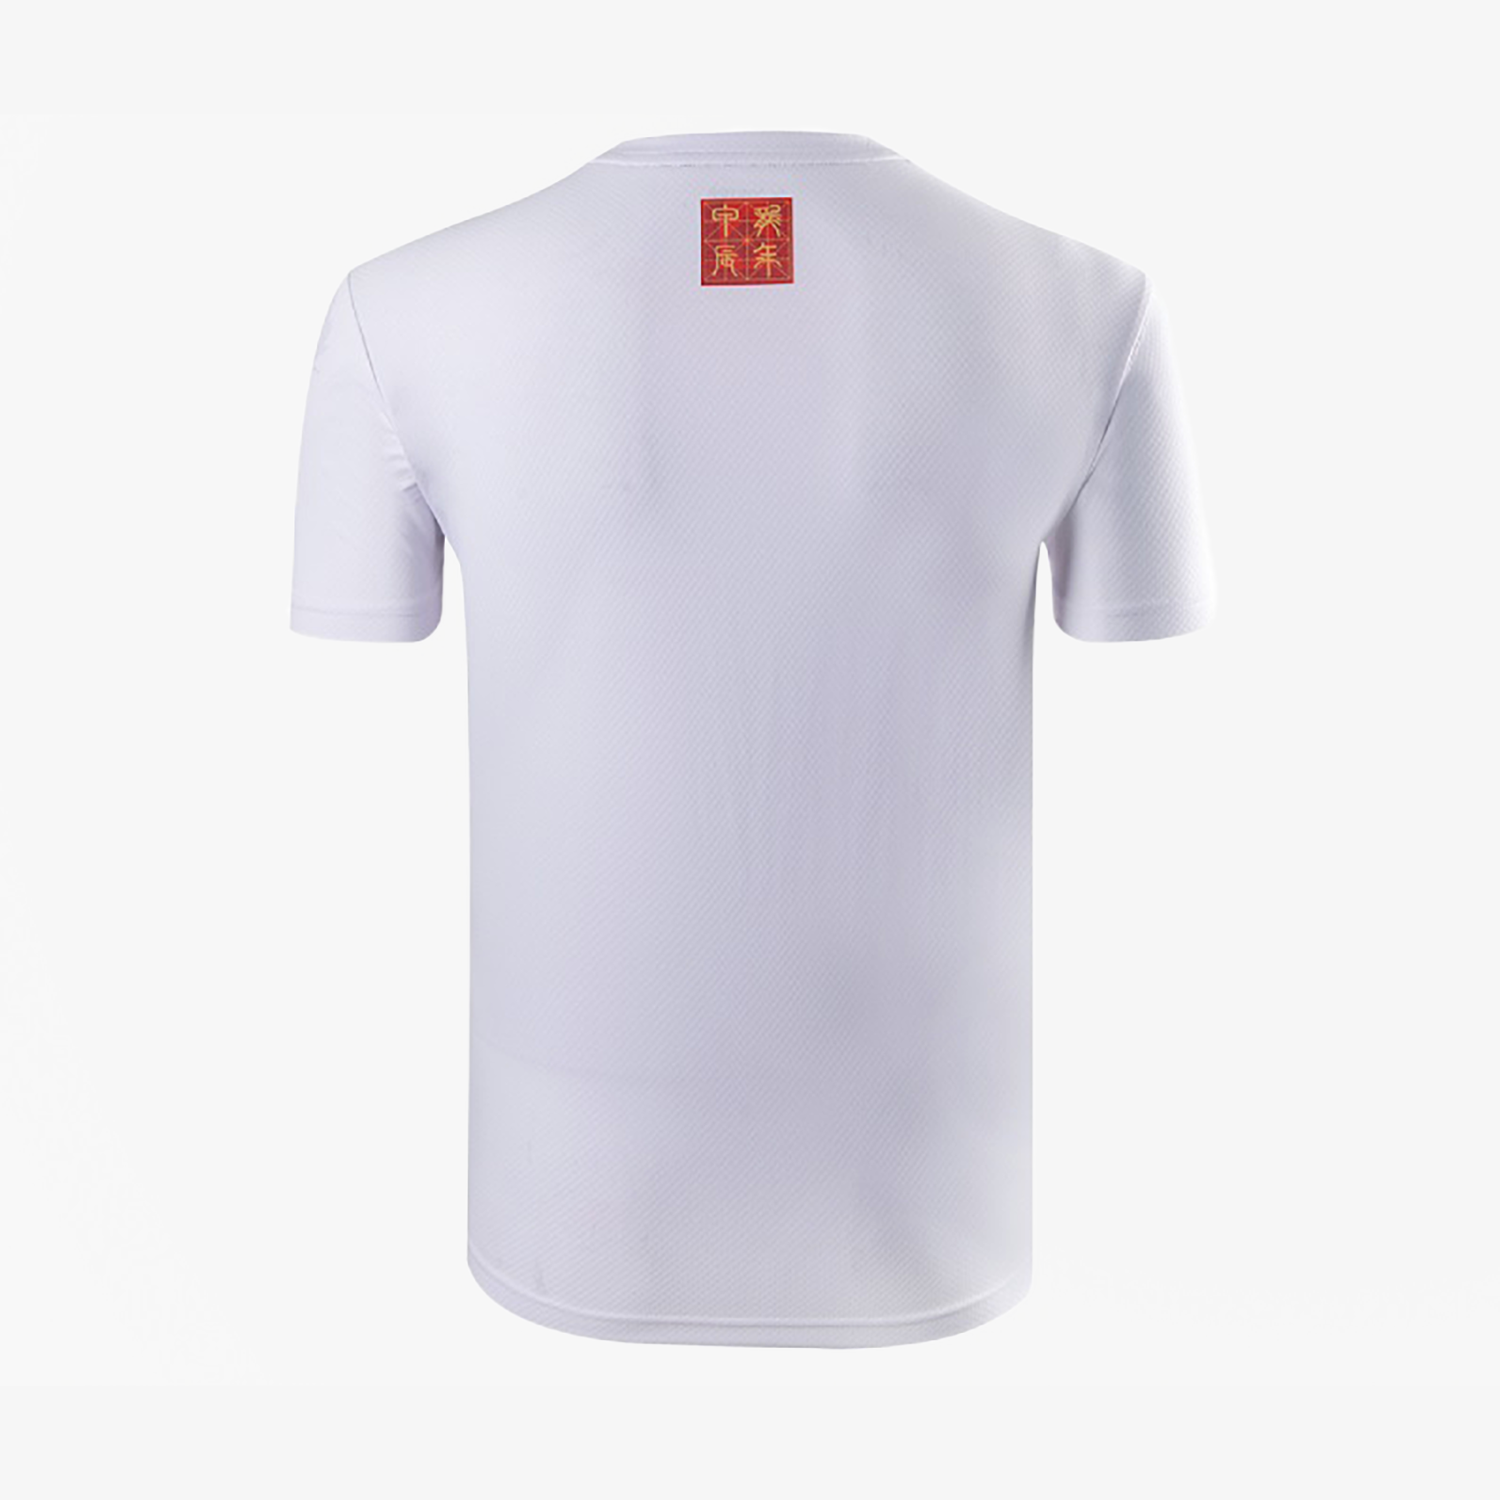 Victor Chinese New Year Shirt T-402CNYA (White)